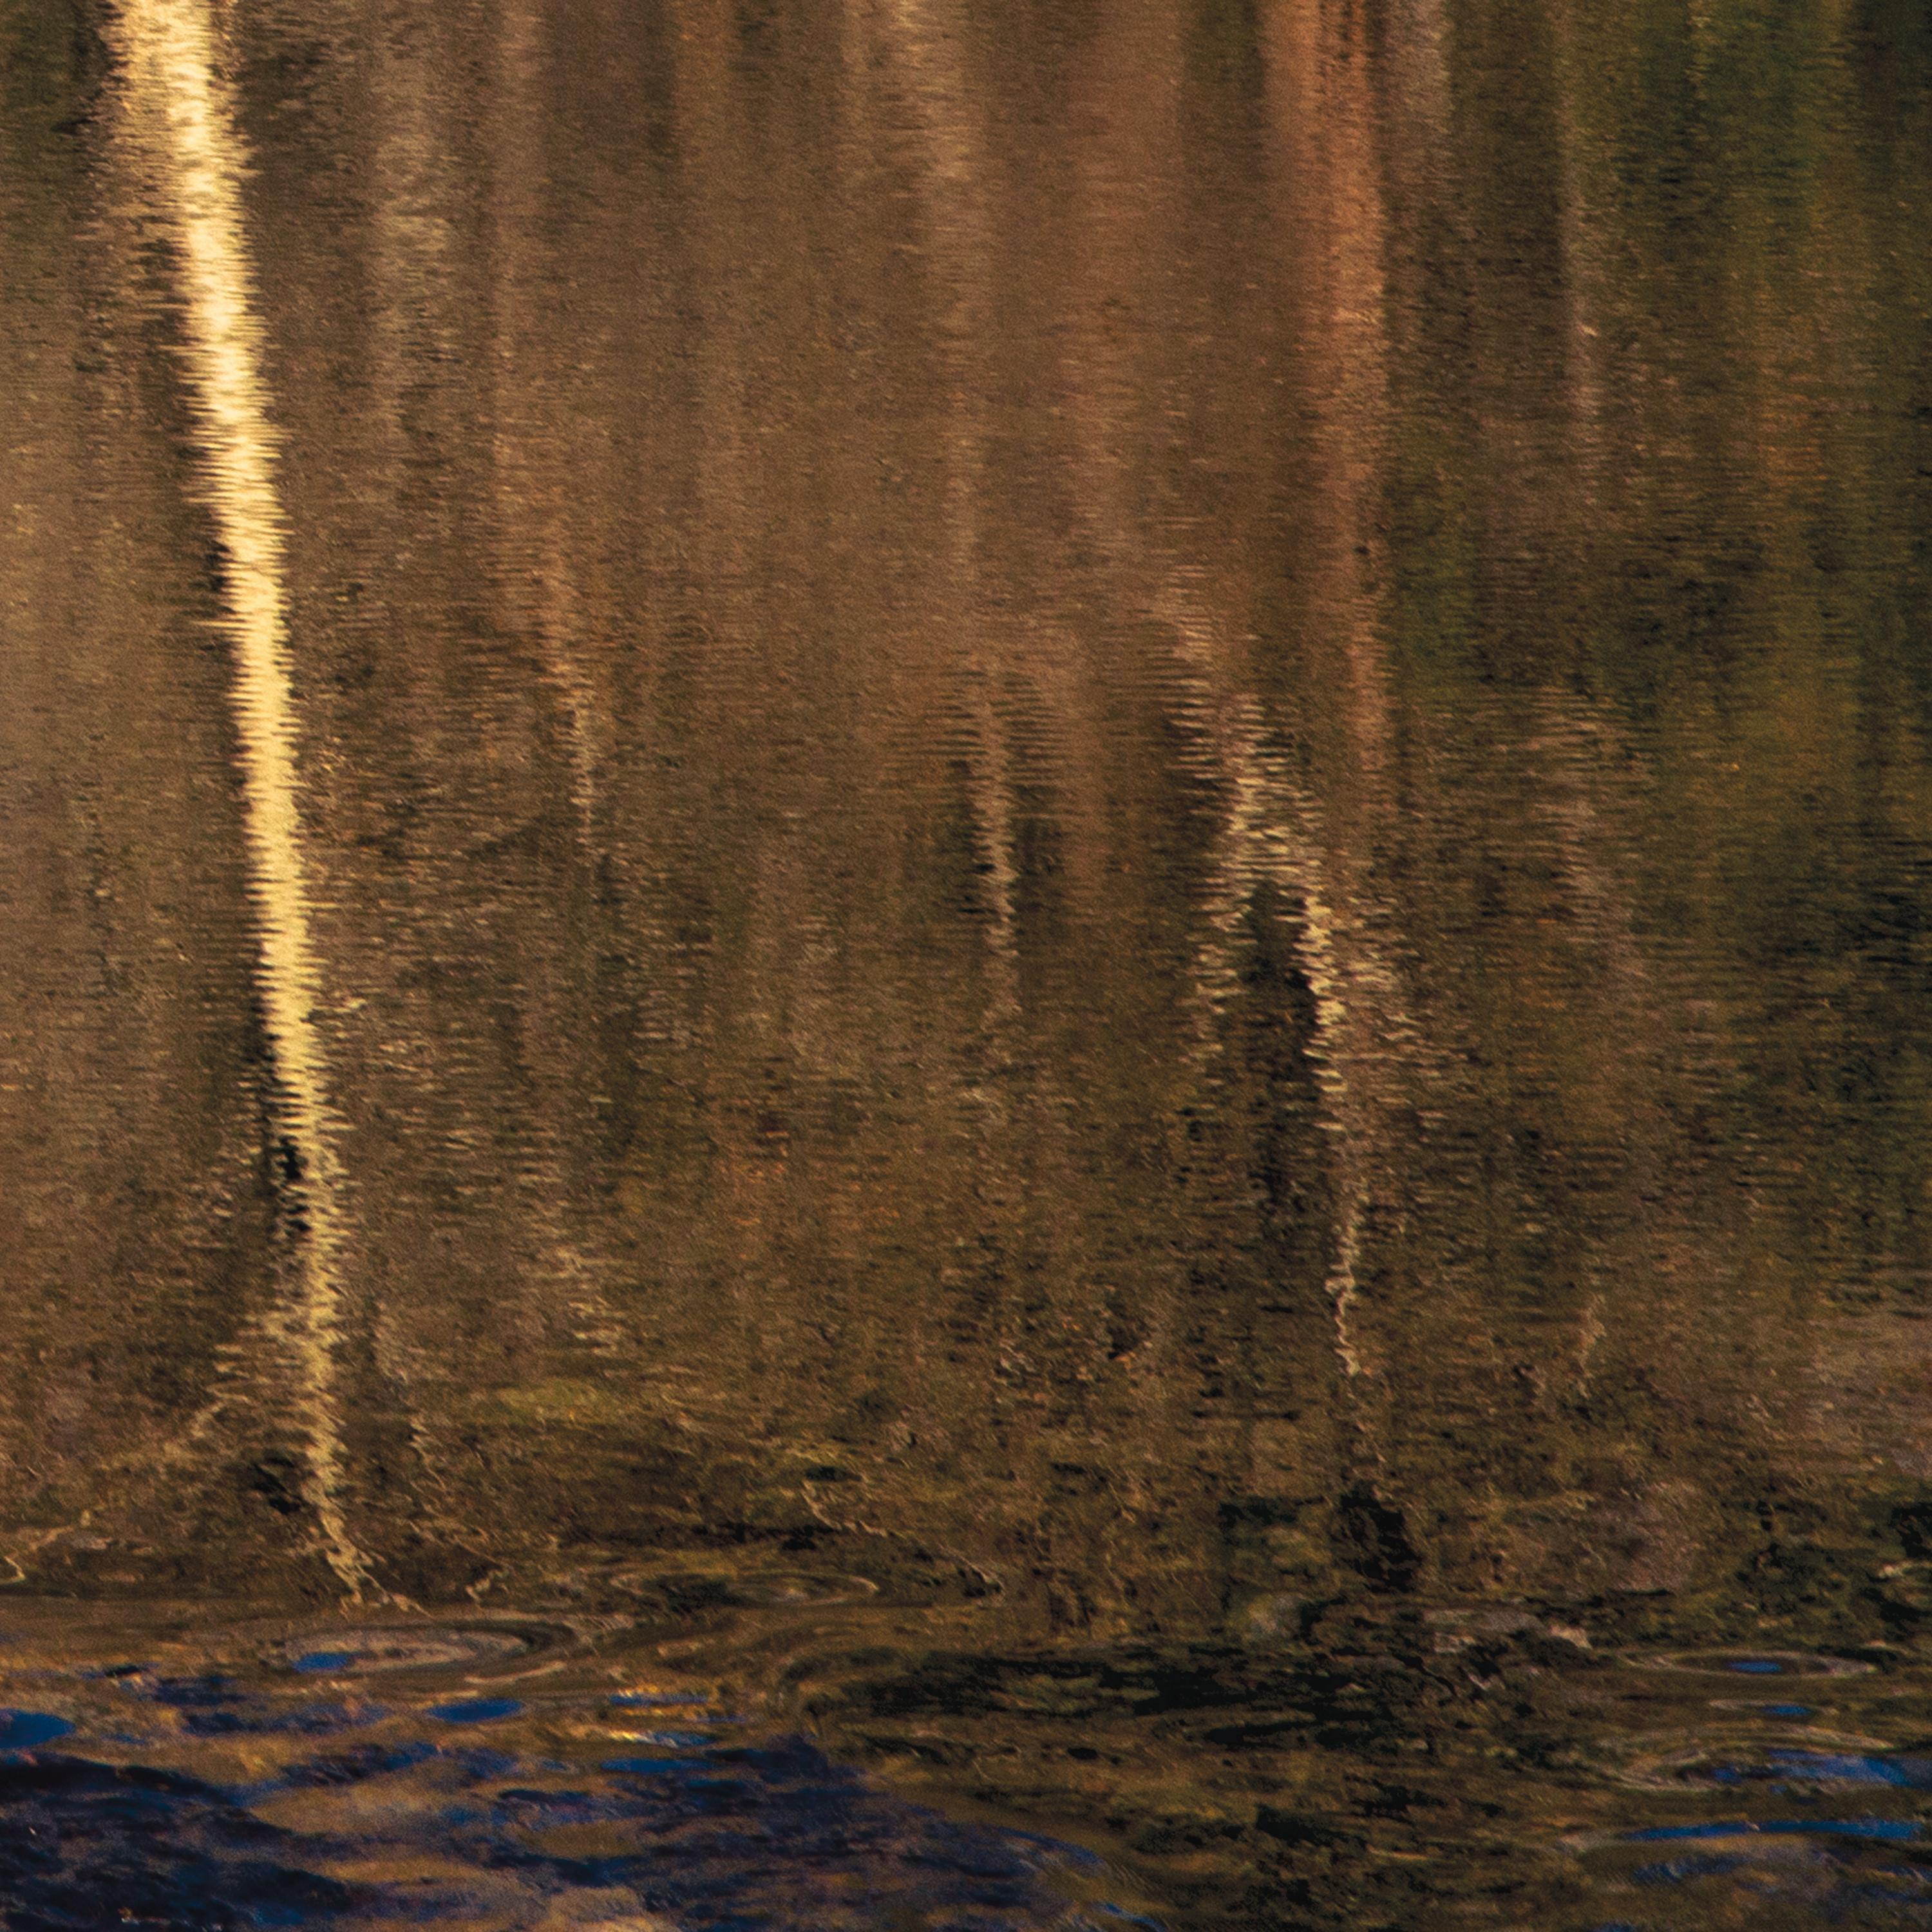 Wa-Kal-La 
Trittico fotografico d'archivio. Edizione limitata di 25 esemplari. 
Firmato e numerato a mano, senza cornice.
_________________
Riflessi nella superficie increspata del fiume Merced, i pioppi brillano, dorati nella luce del sole di metà